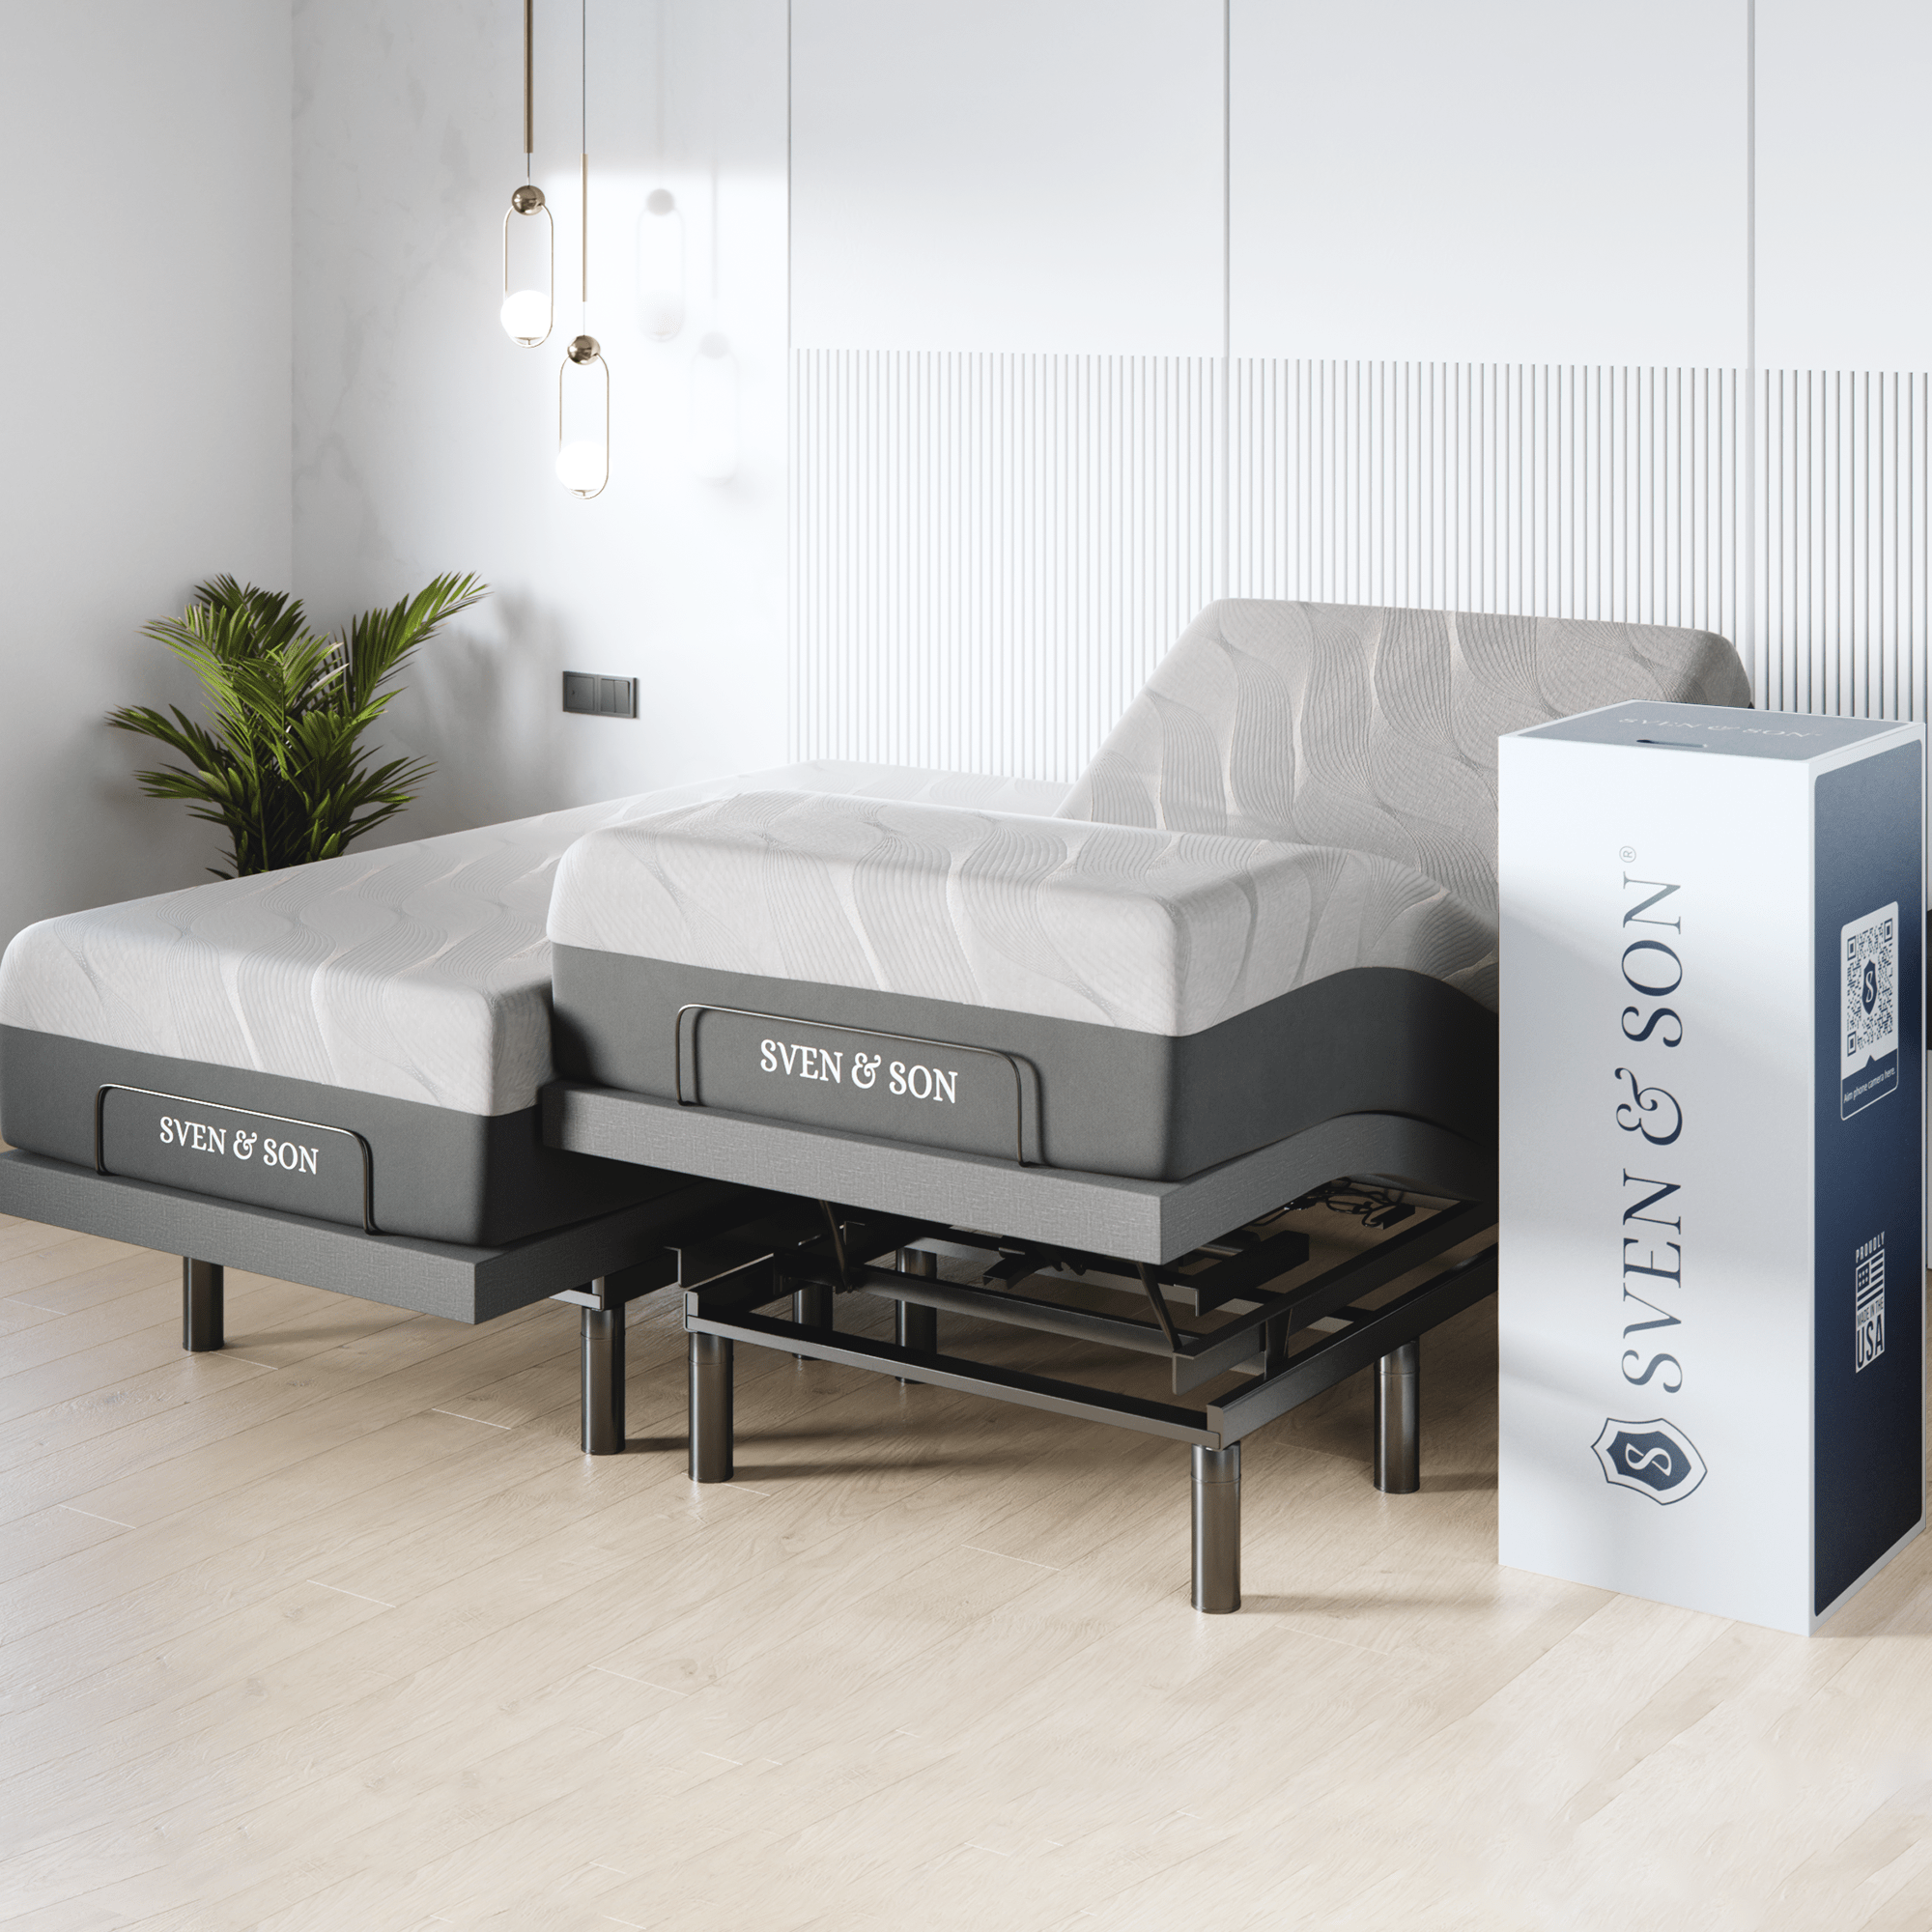 Regreso Reparación posible Original Base de cama ajustable serie de la serie de inclinación + elección del –  Sven & Son